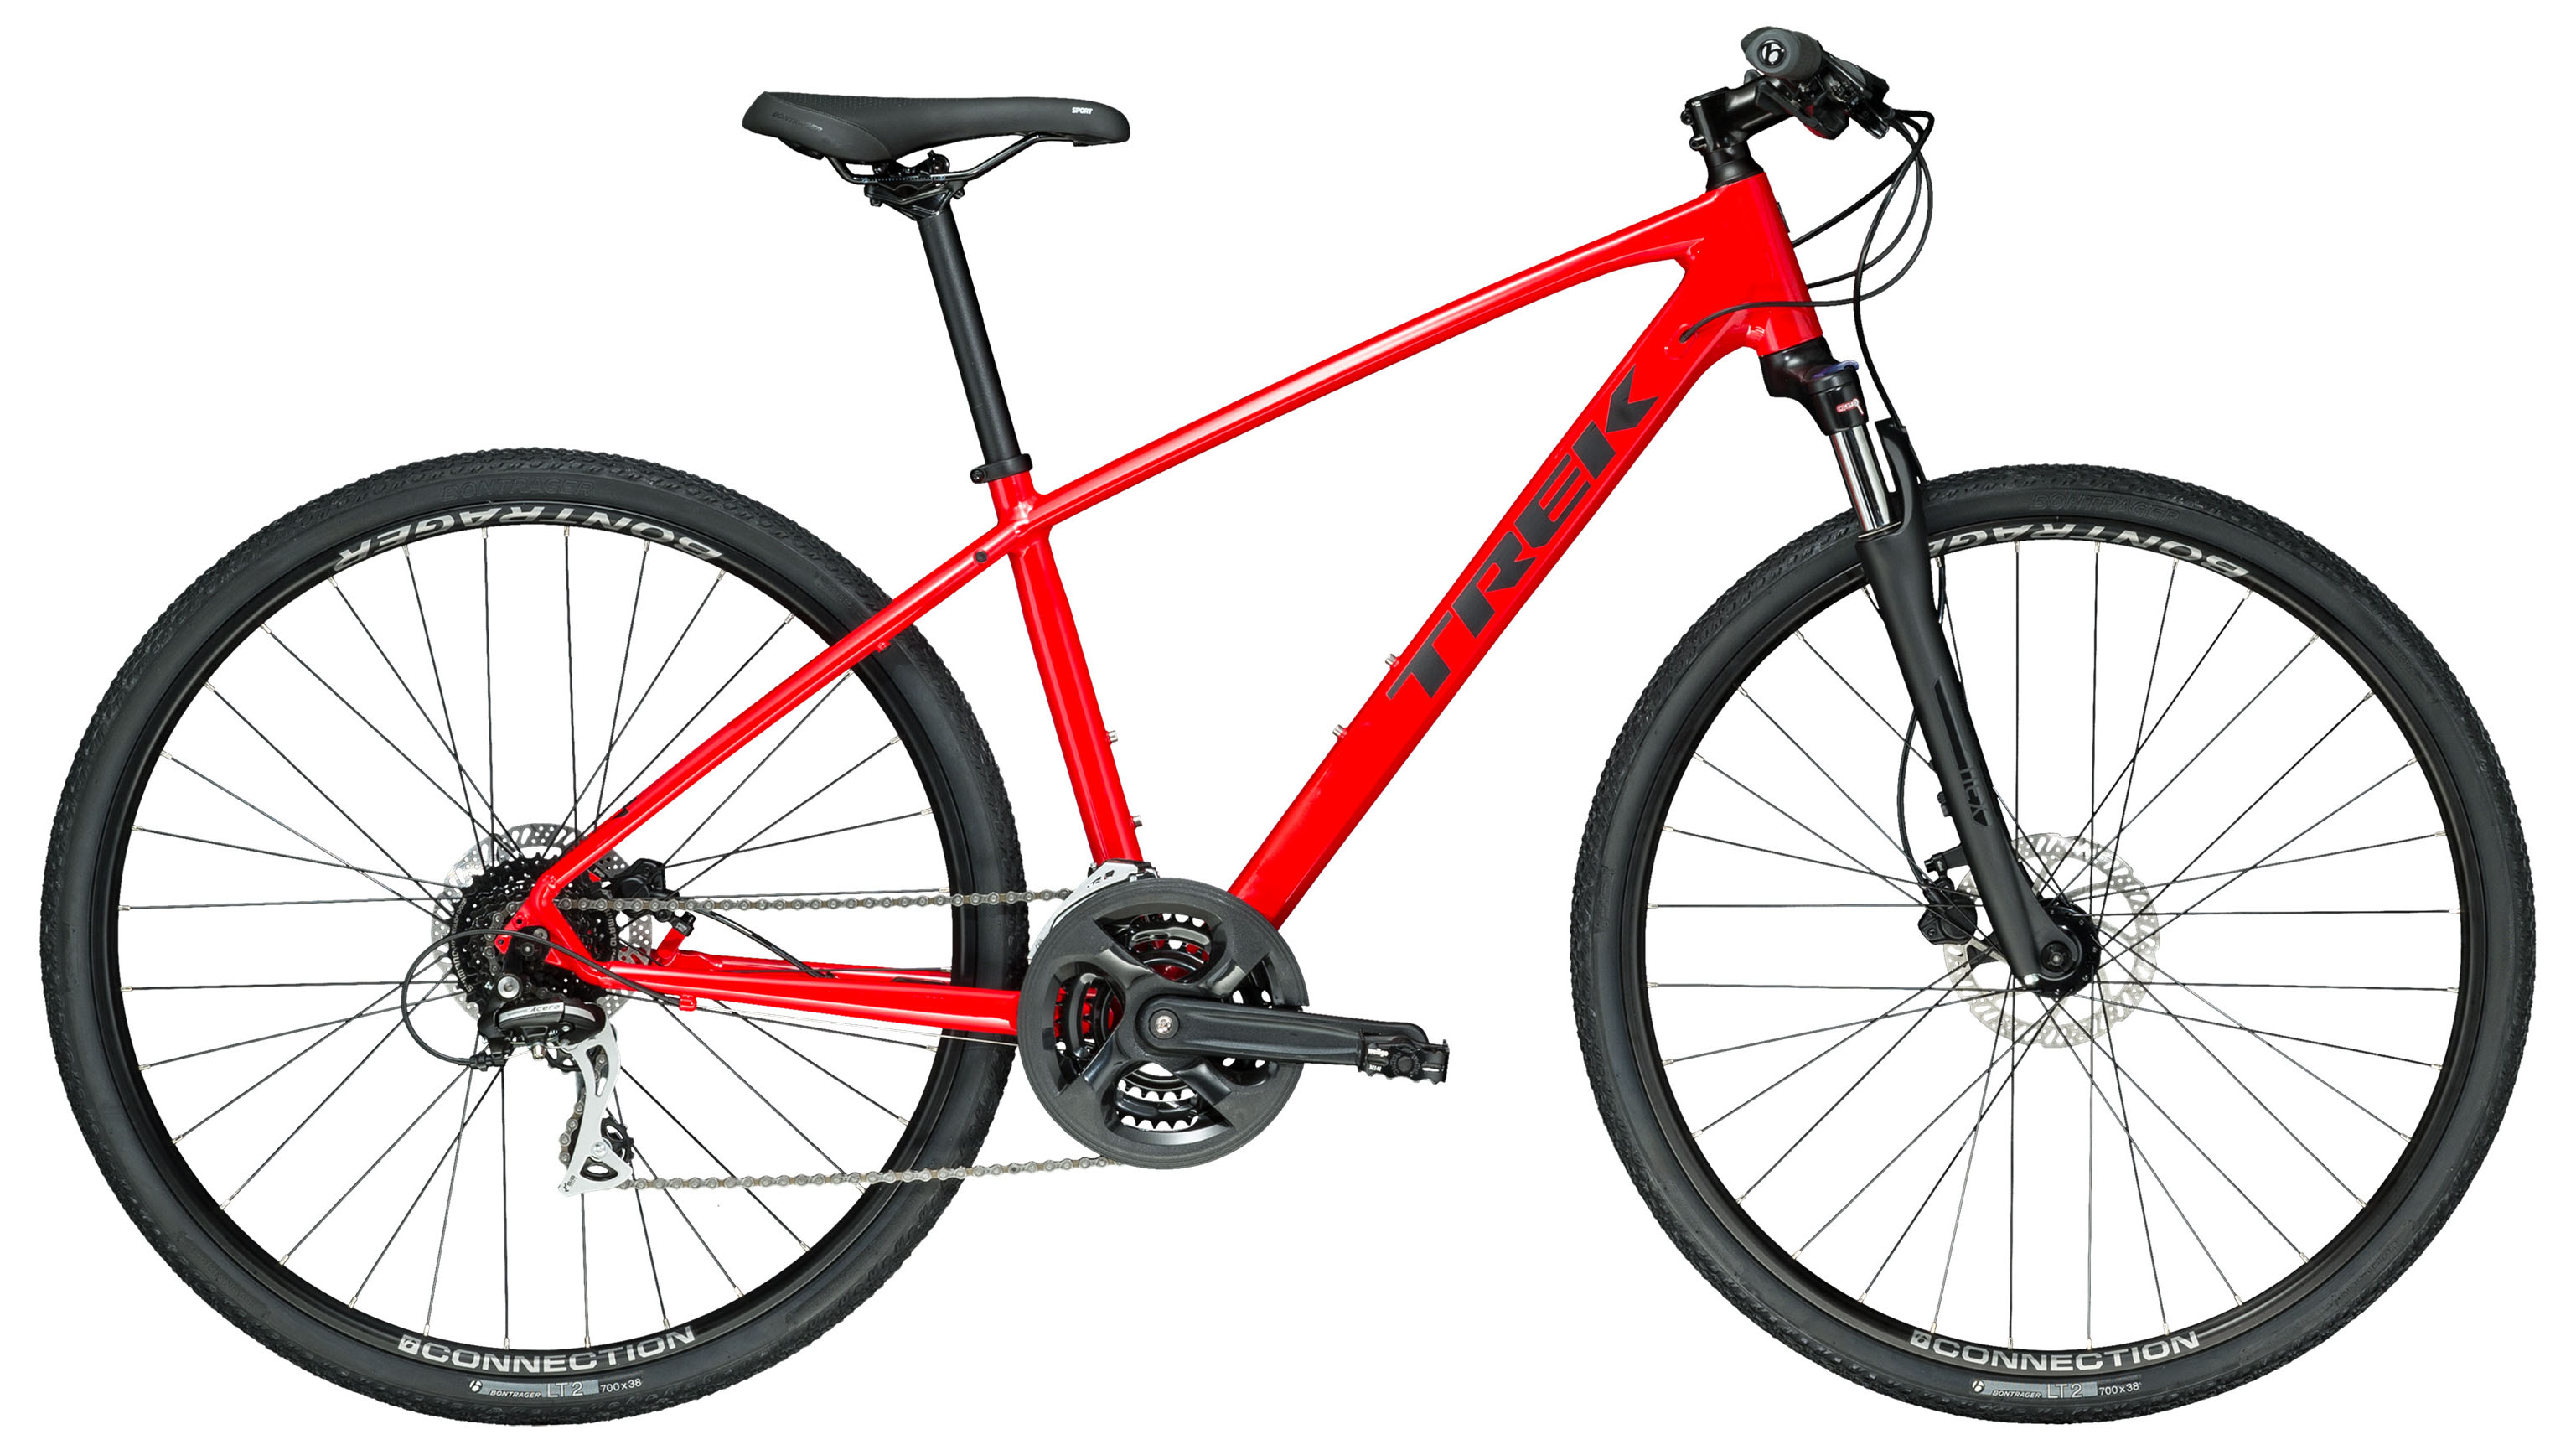  Отзывы о Городском велосипеде Trek Dual Sport 2 2021